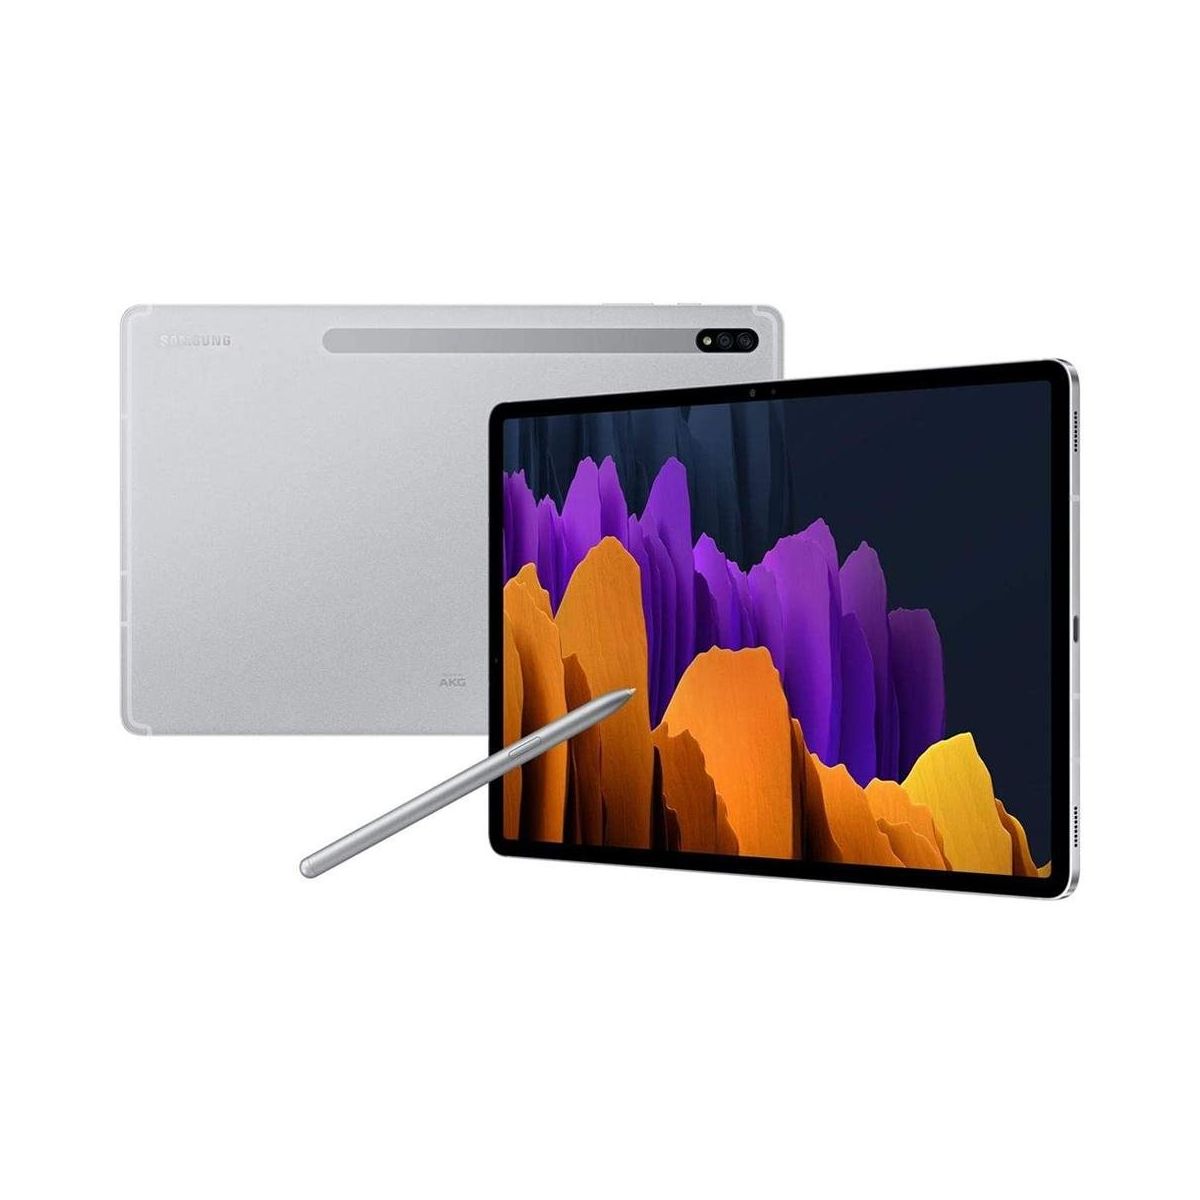 En Ucuz Samsung Tablet Pc Fiyatları ve Modelleri - Cimri.com